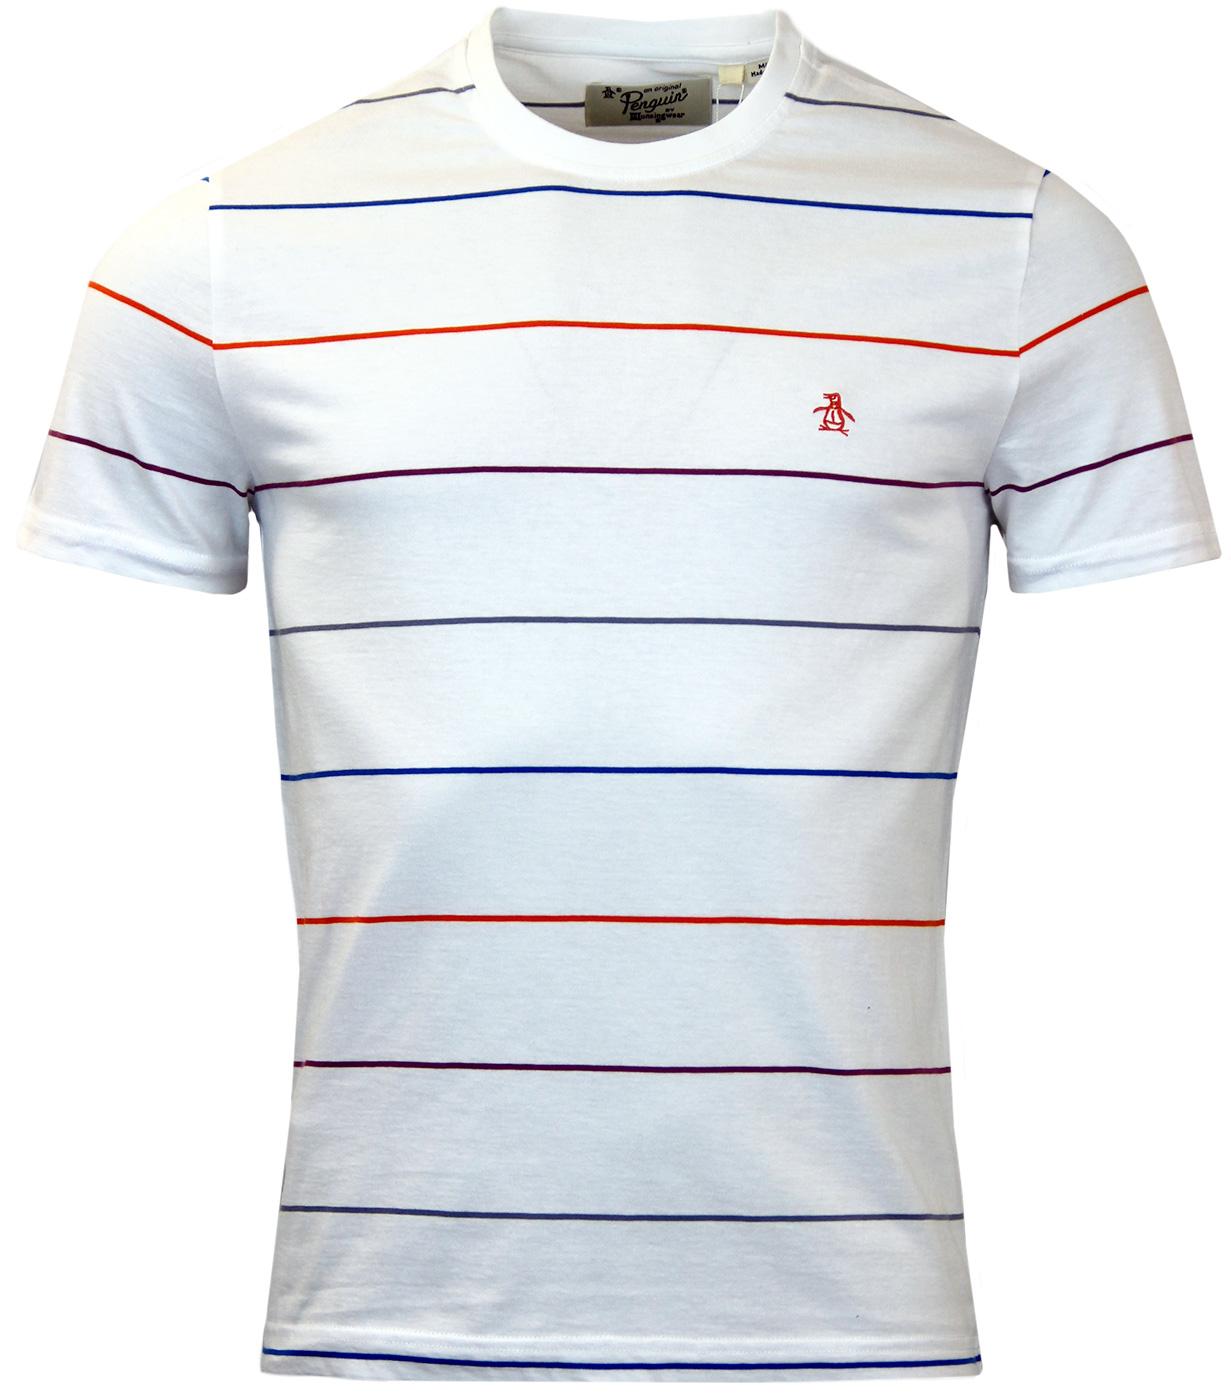 Whittle ORIGINAL PENGUIN Colour Pop Stripe T-Shirt